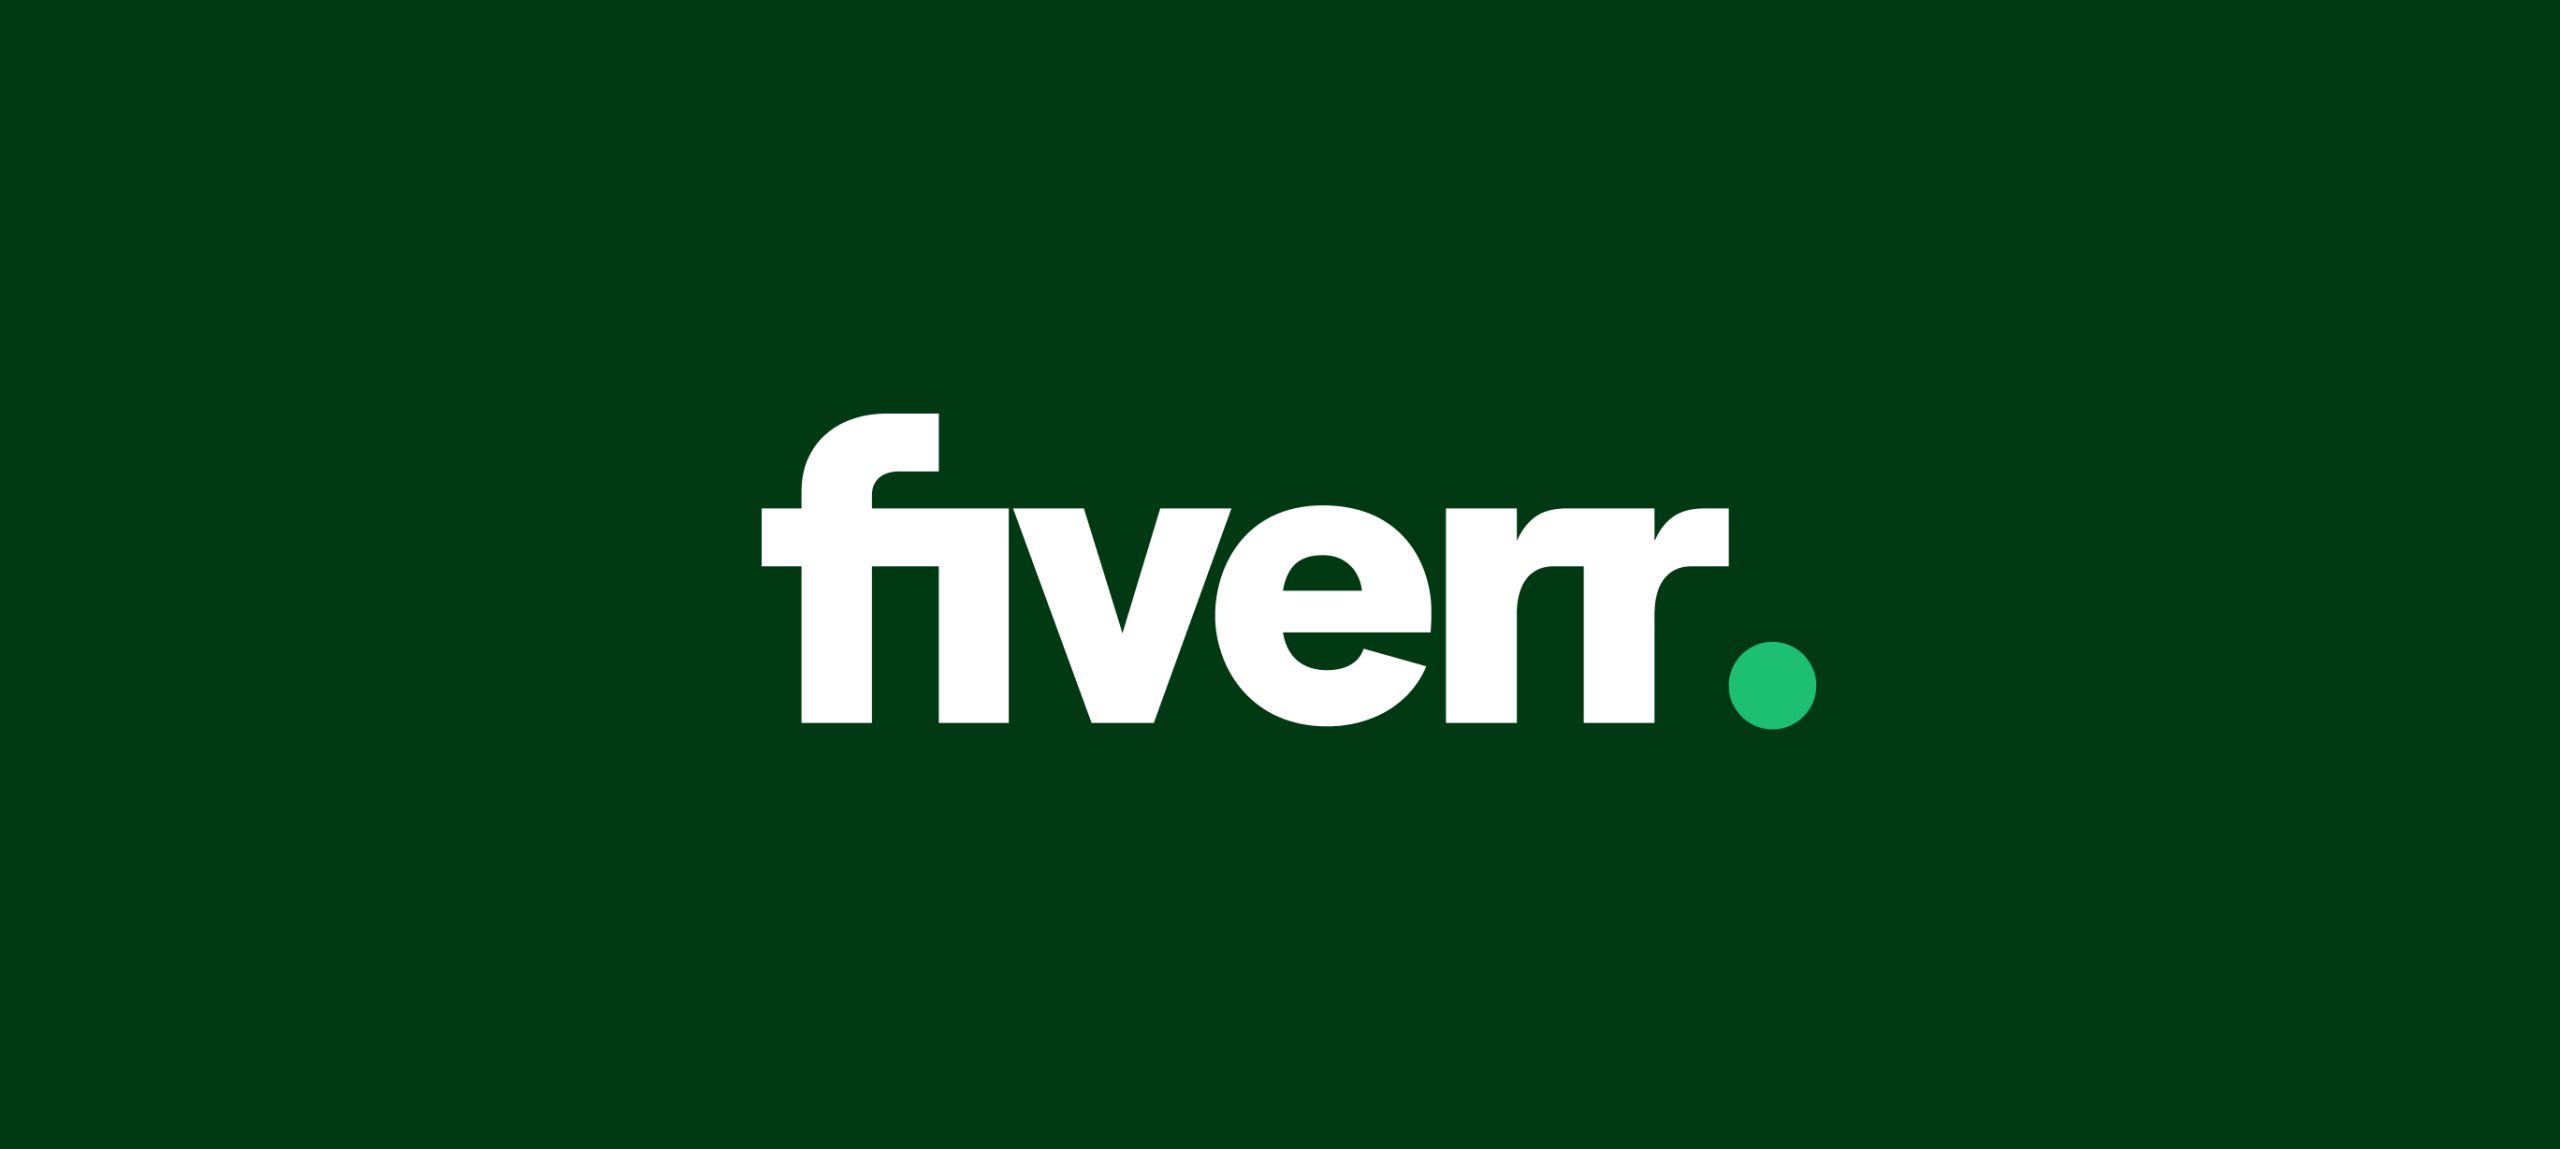 freelancer on fiverr